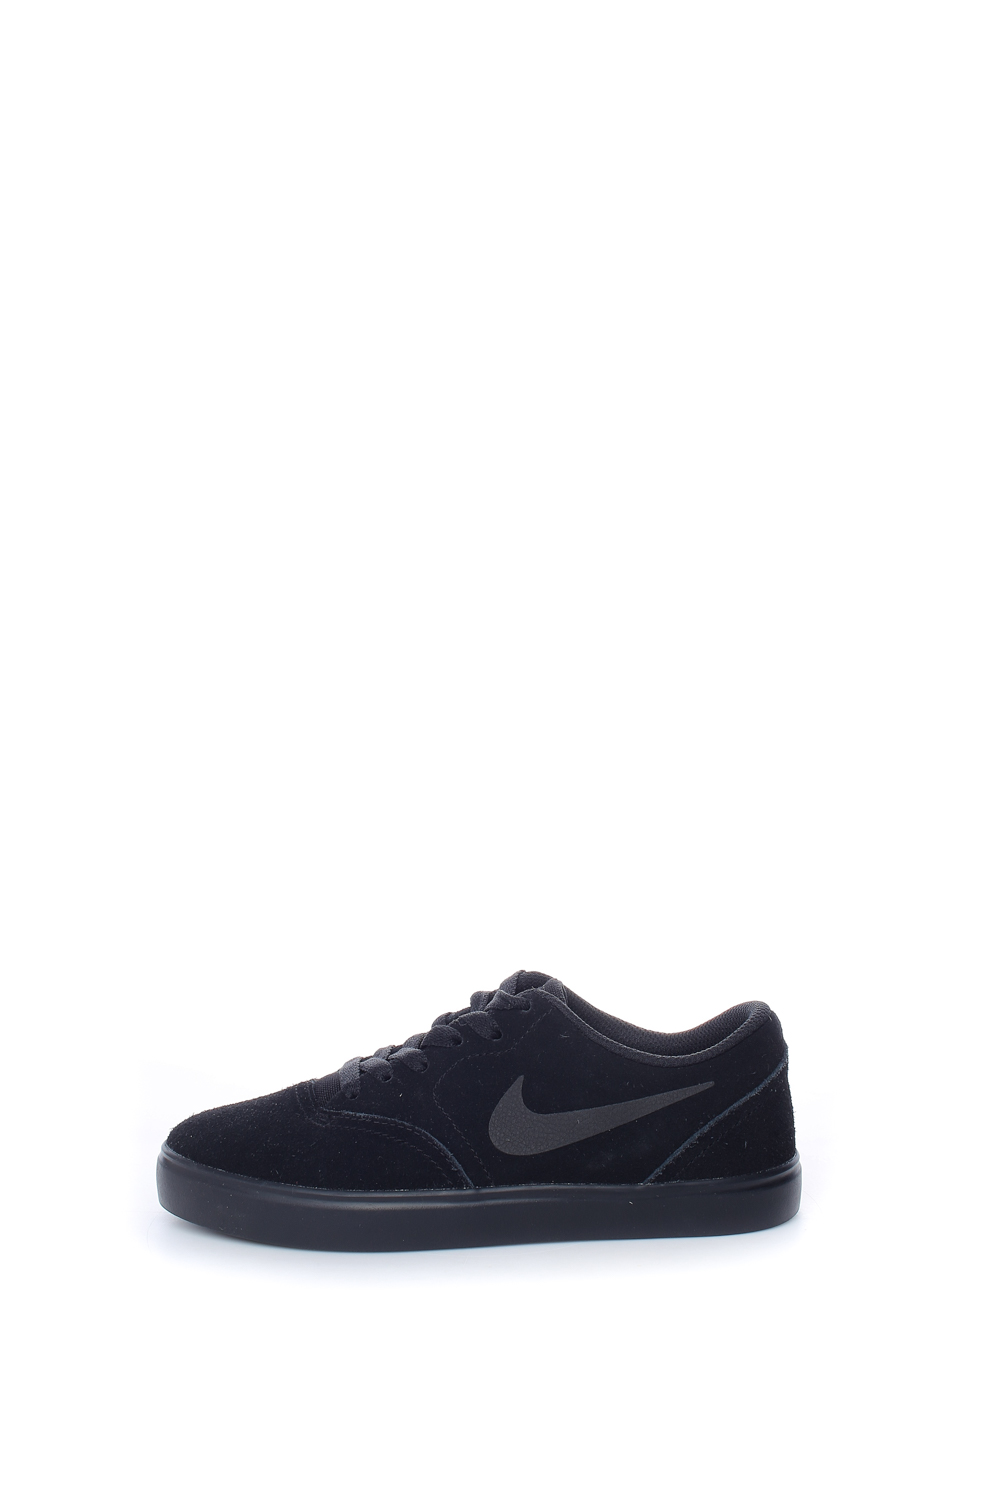 Παιδικά/Boys/Παπούτσια/Sneakers NIKE - Παιδικά παπούτσια Nike SB Check μαύρα